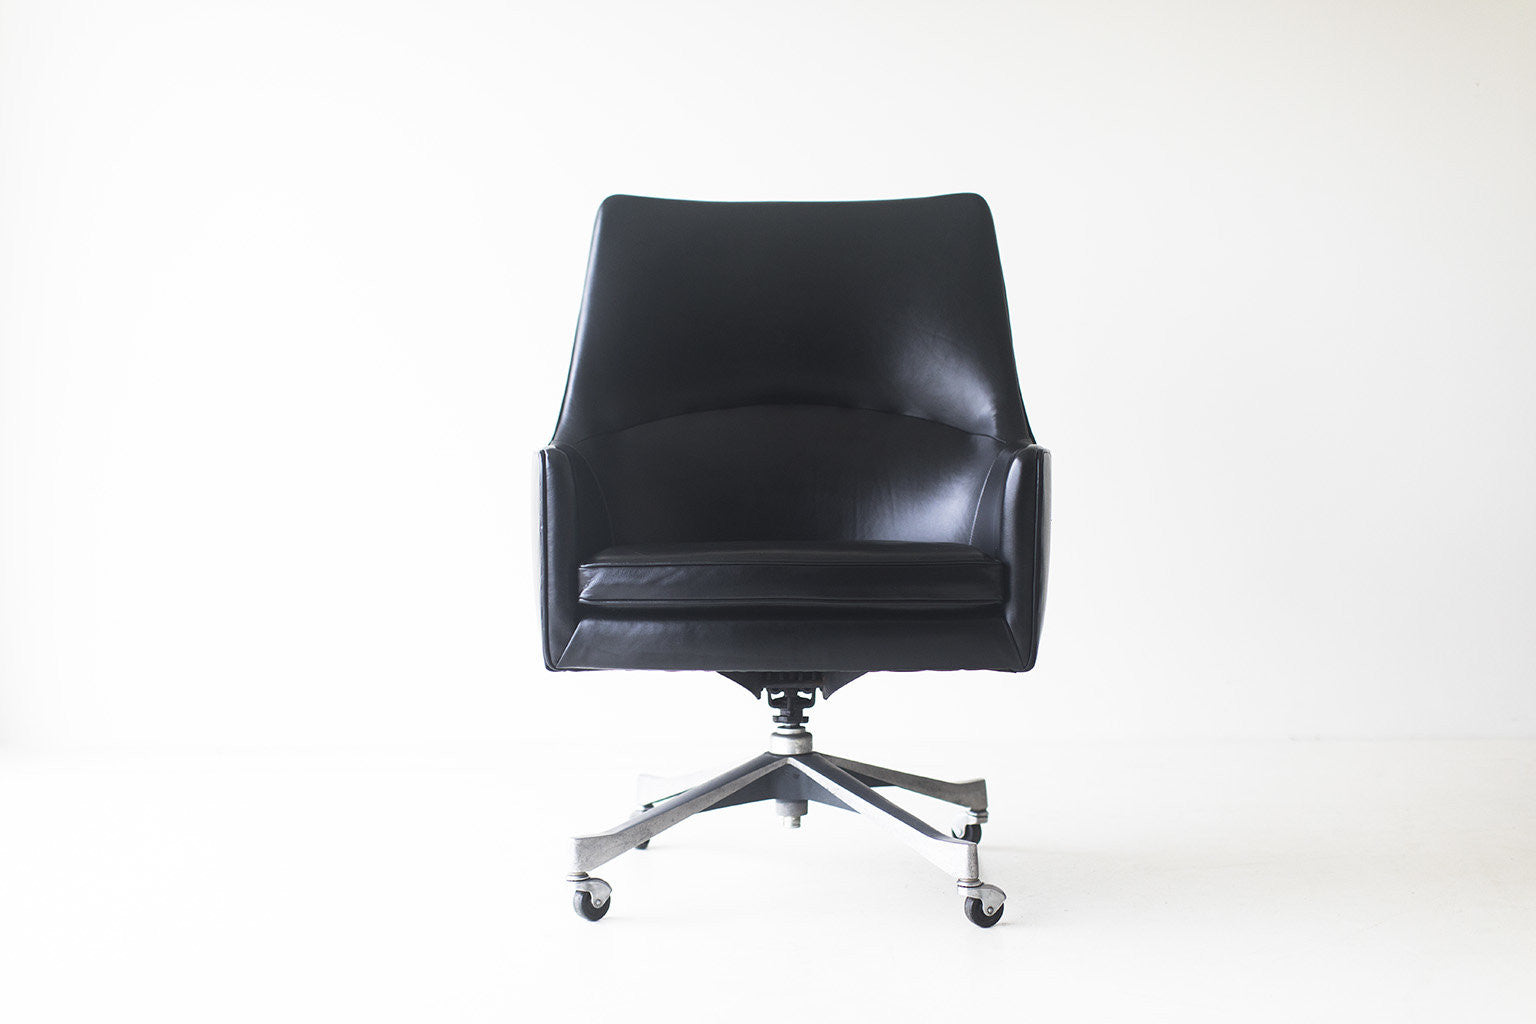 Jens Risom Office Chair for Jens Risom Design Inc. - 03031701